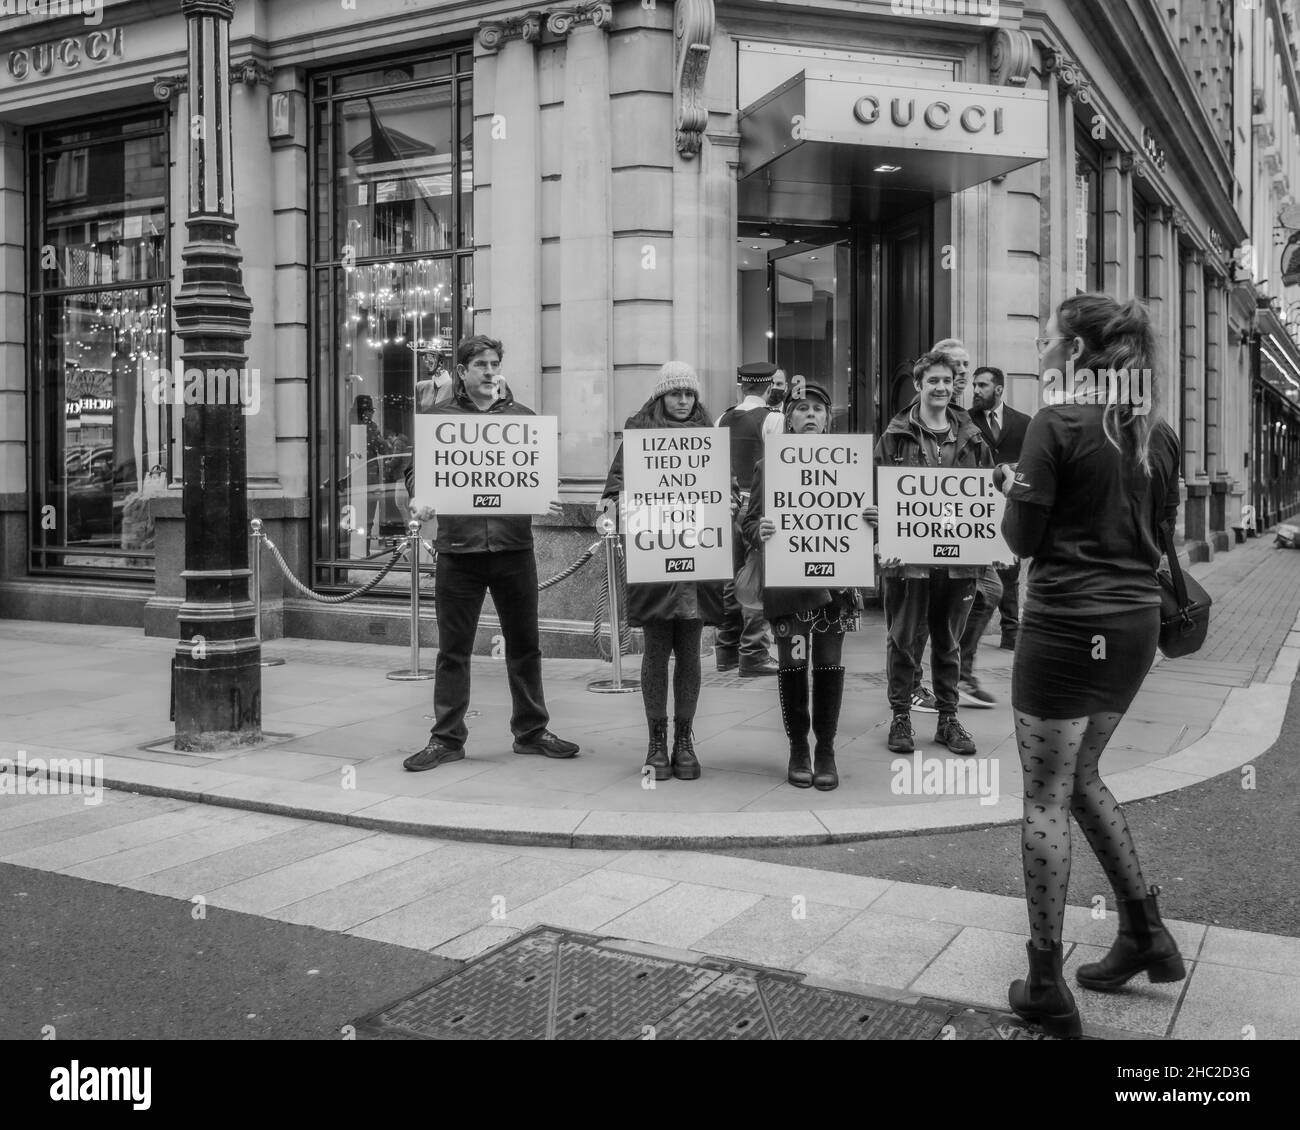 Gli attivisti tengono cartelli chiedendo che Gucci smetta di utilizzare pelli esotiche per le loro cinture e borse. Foto Stock